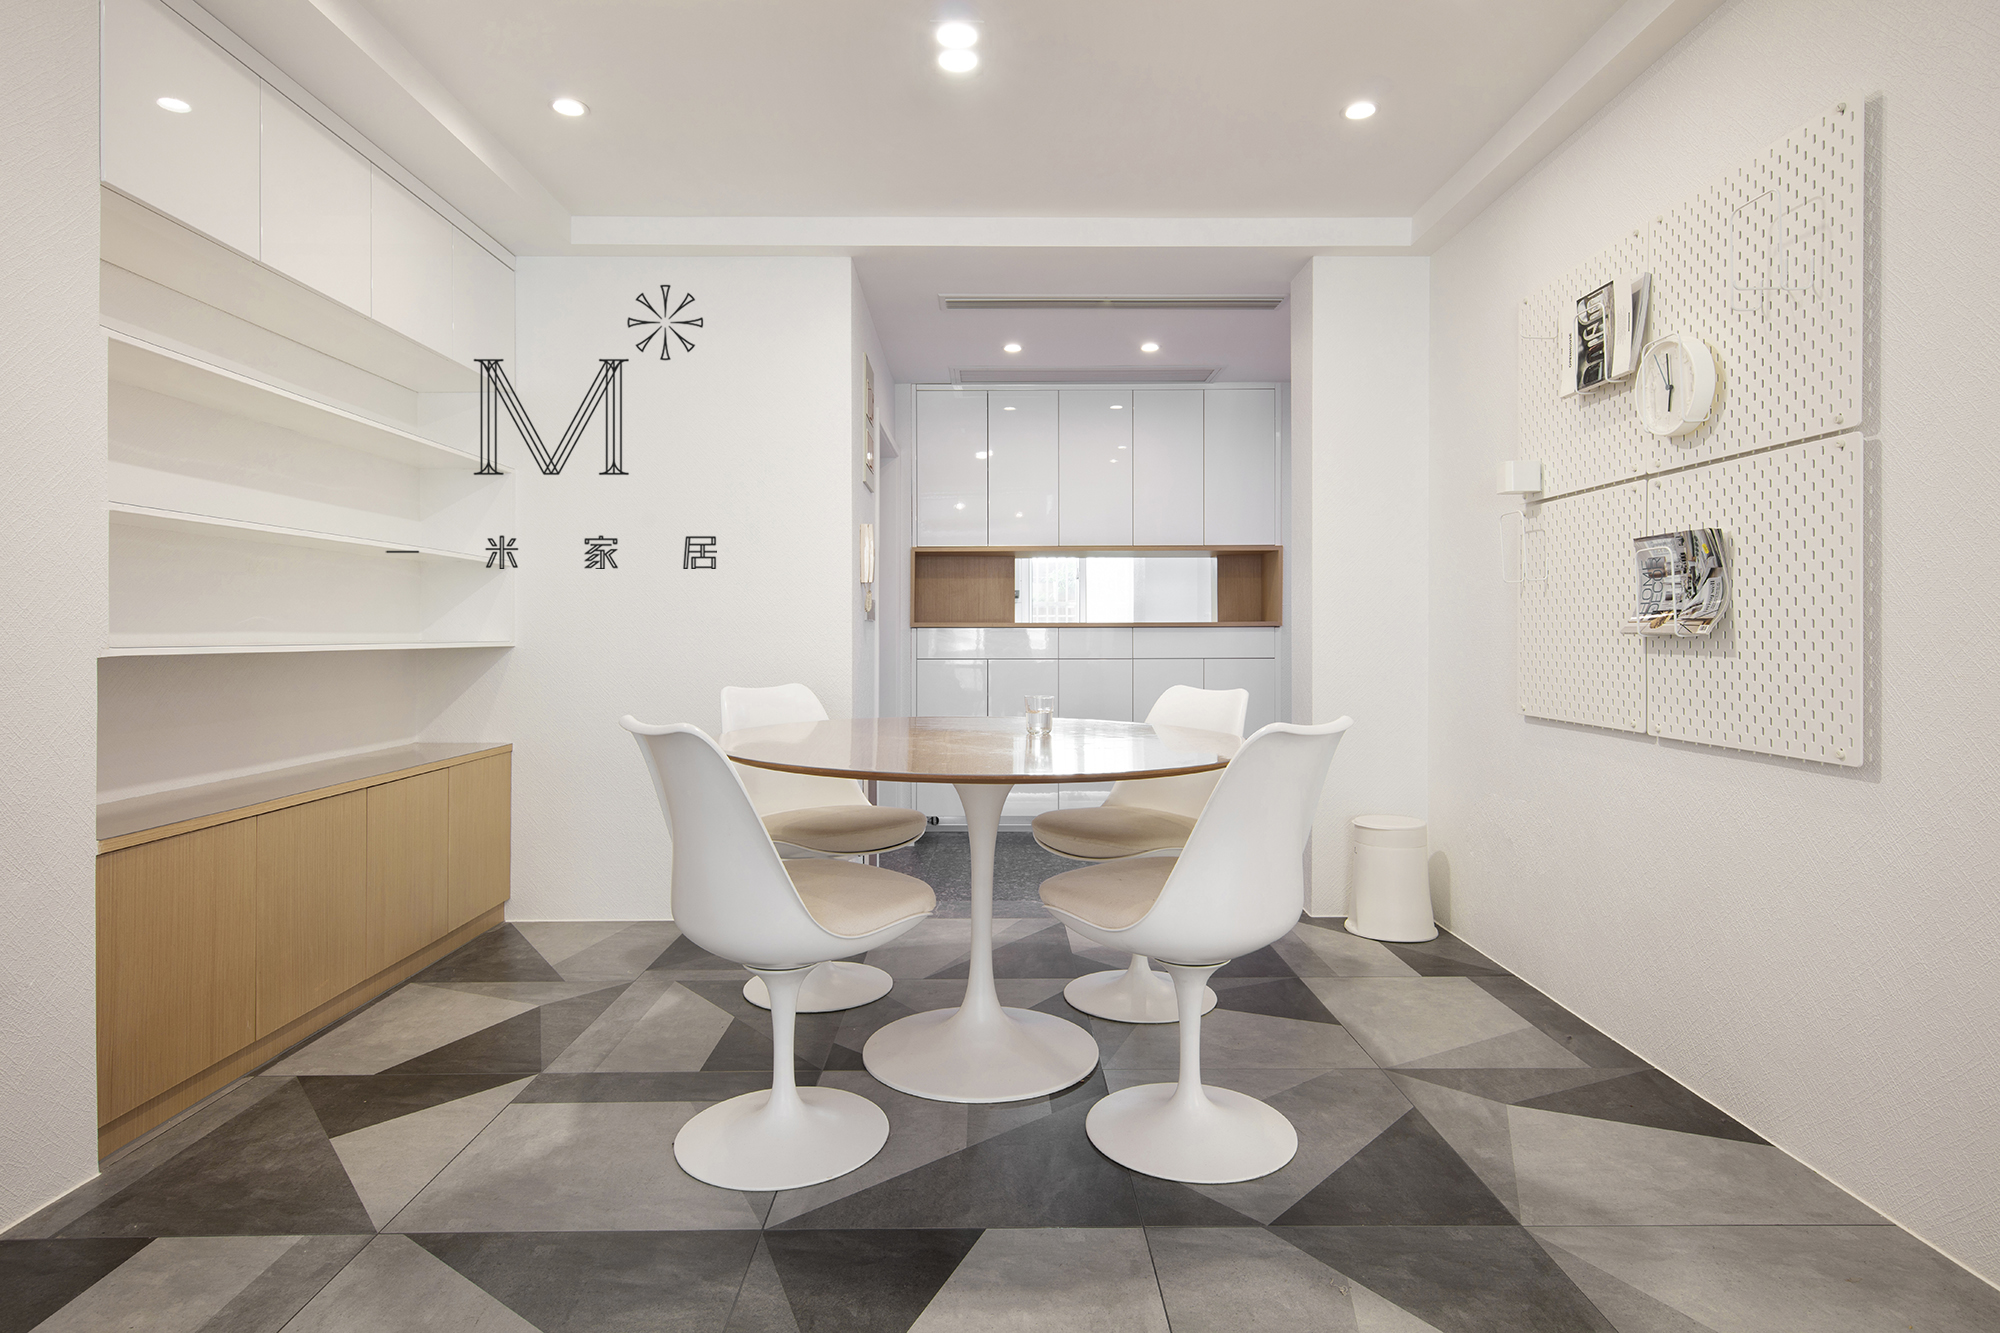 厨房瓷砖装修效果图优美120平简约三居装潢图现代简约餐厅设计图片赏析